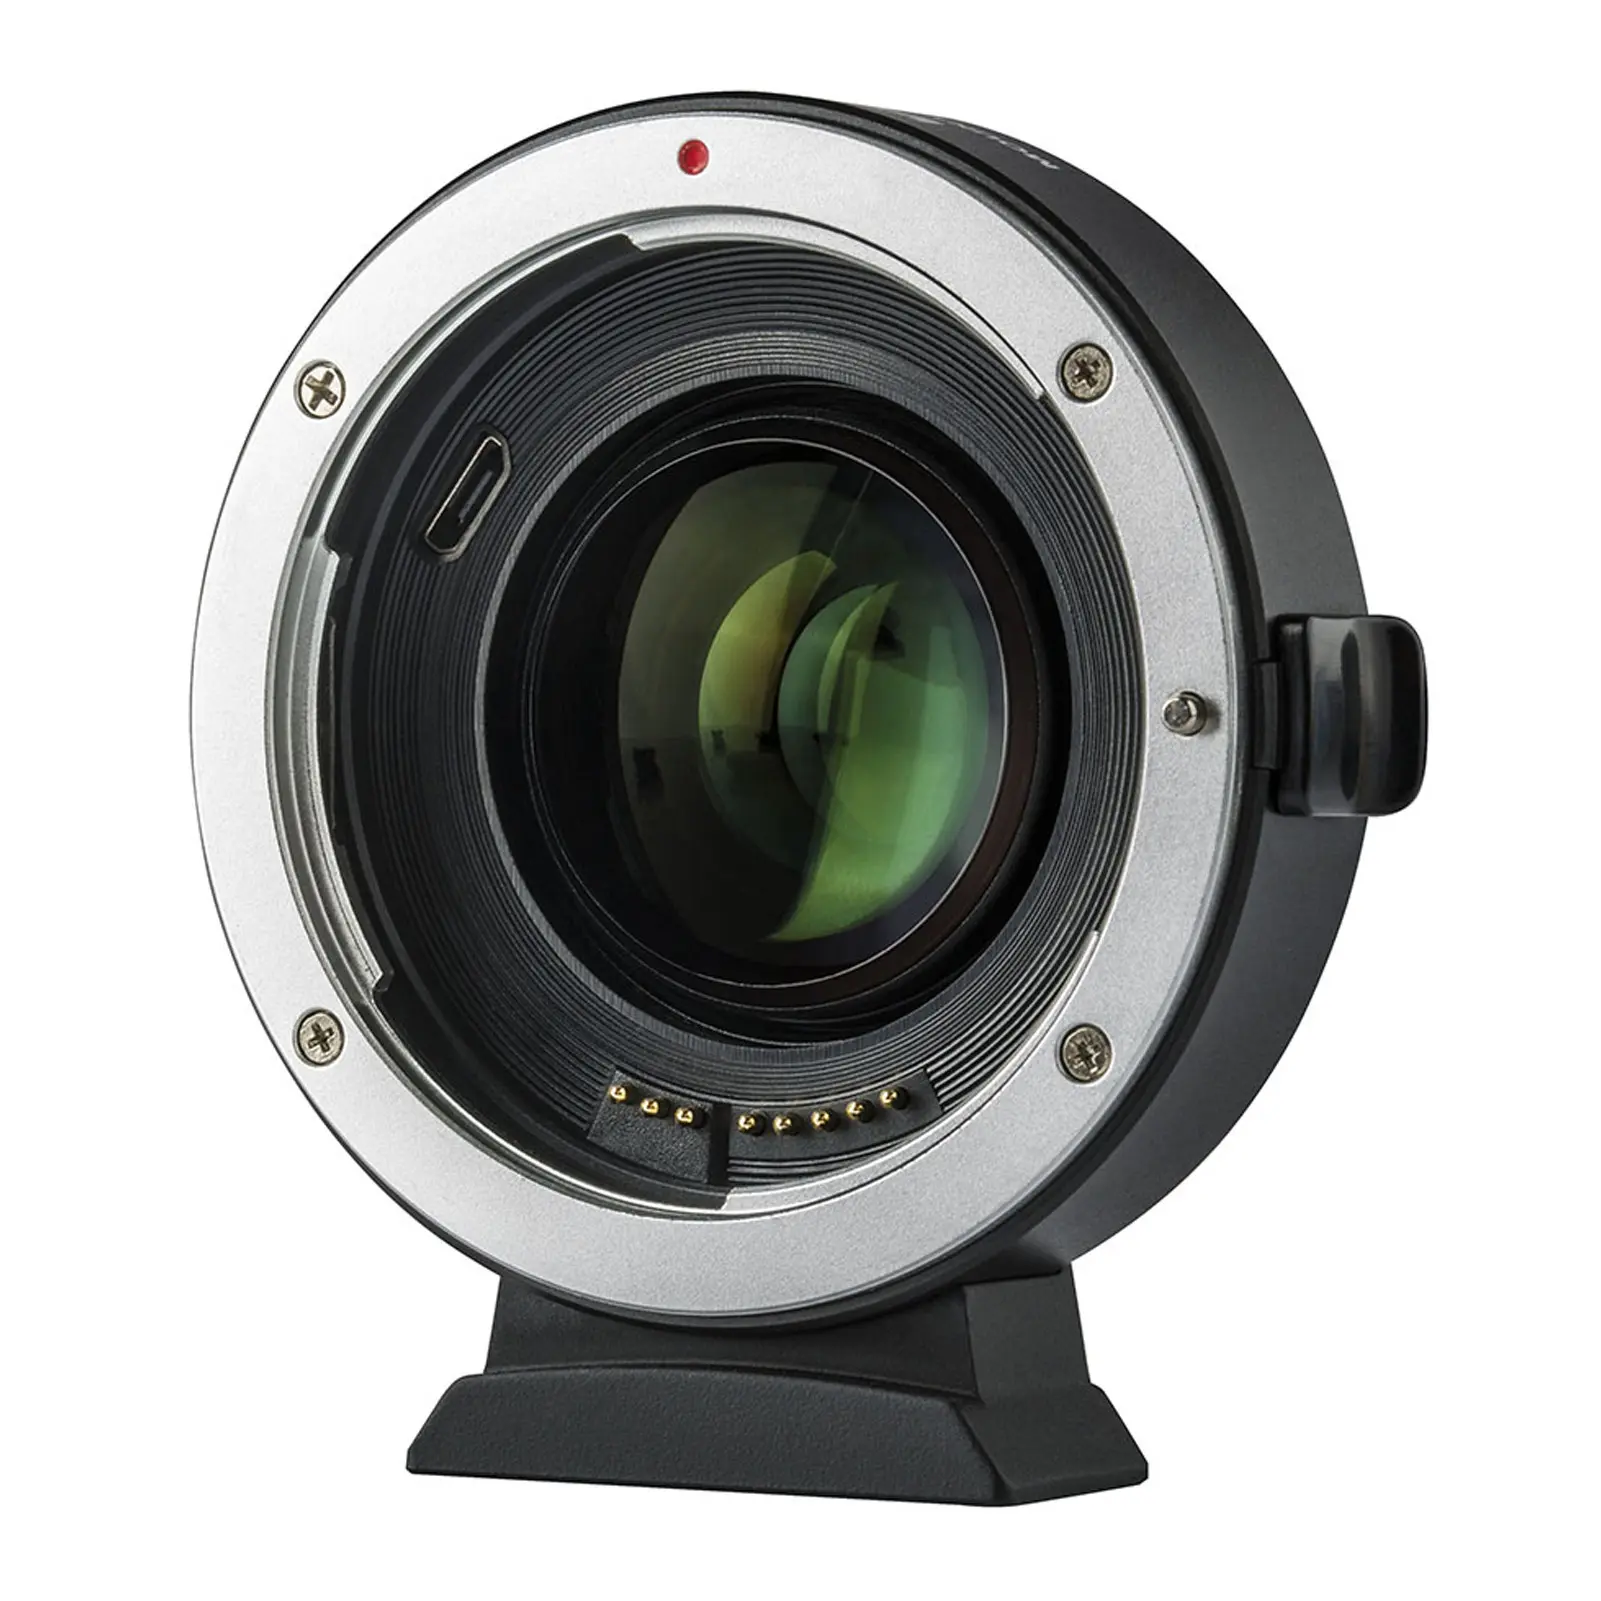 Adaptateur d'objectif VILTROX EF-EOS M2 0.71x Booster de vitesse pour objectif Canon EF à EOS EF-M appareil photo sans miroir M50 AF réducteur de focale automatique